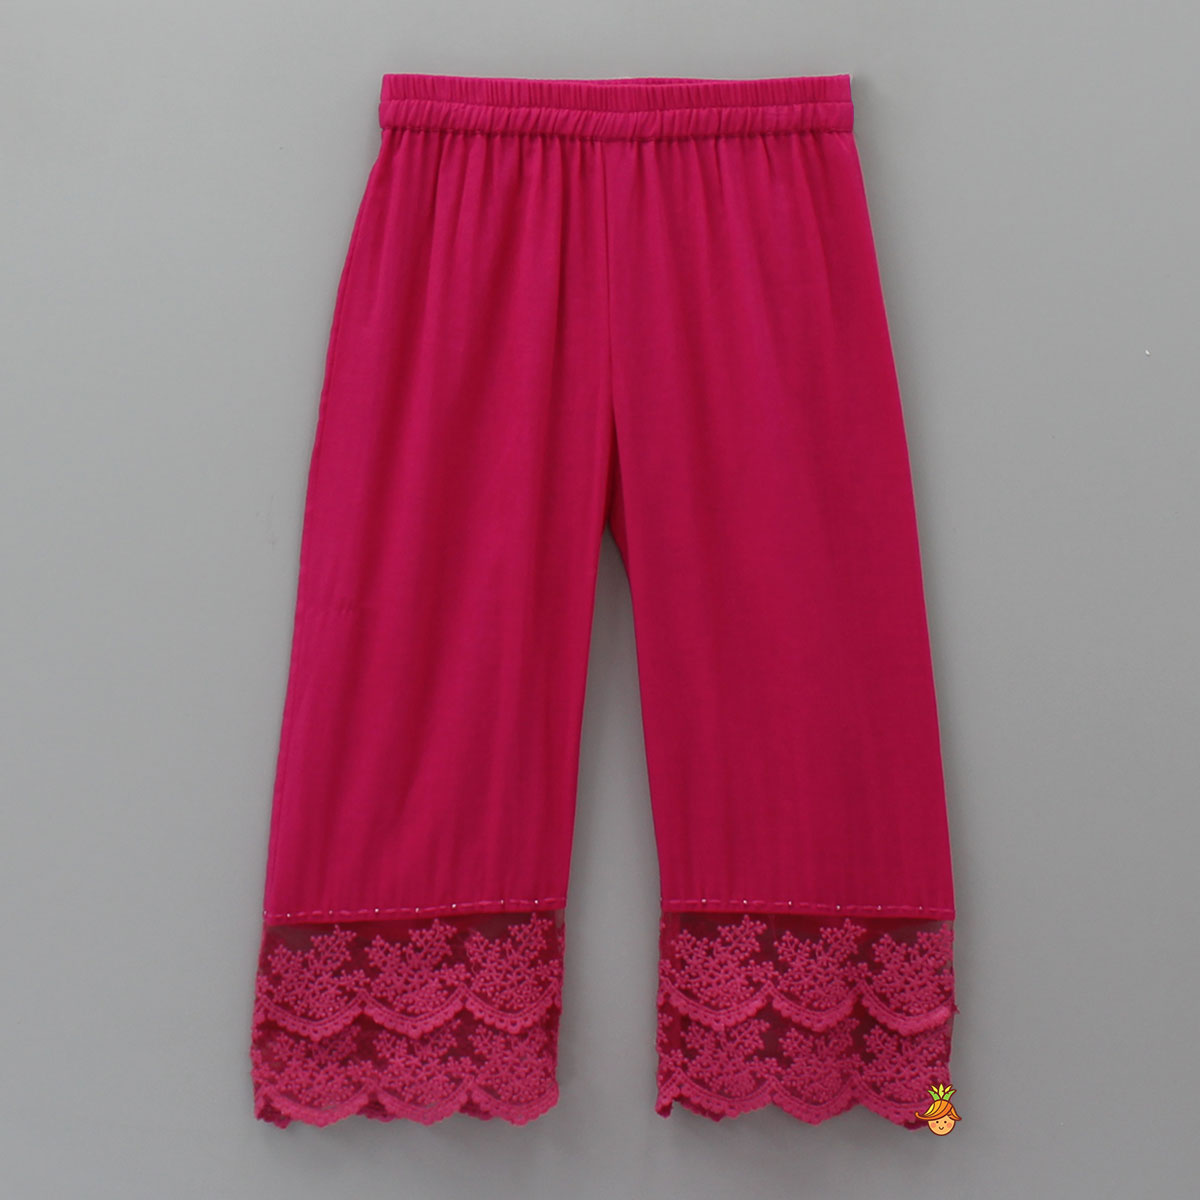 Splendid Pink Lace Kurti And Pant With Matching Dupatta